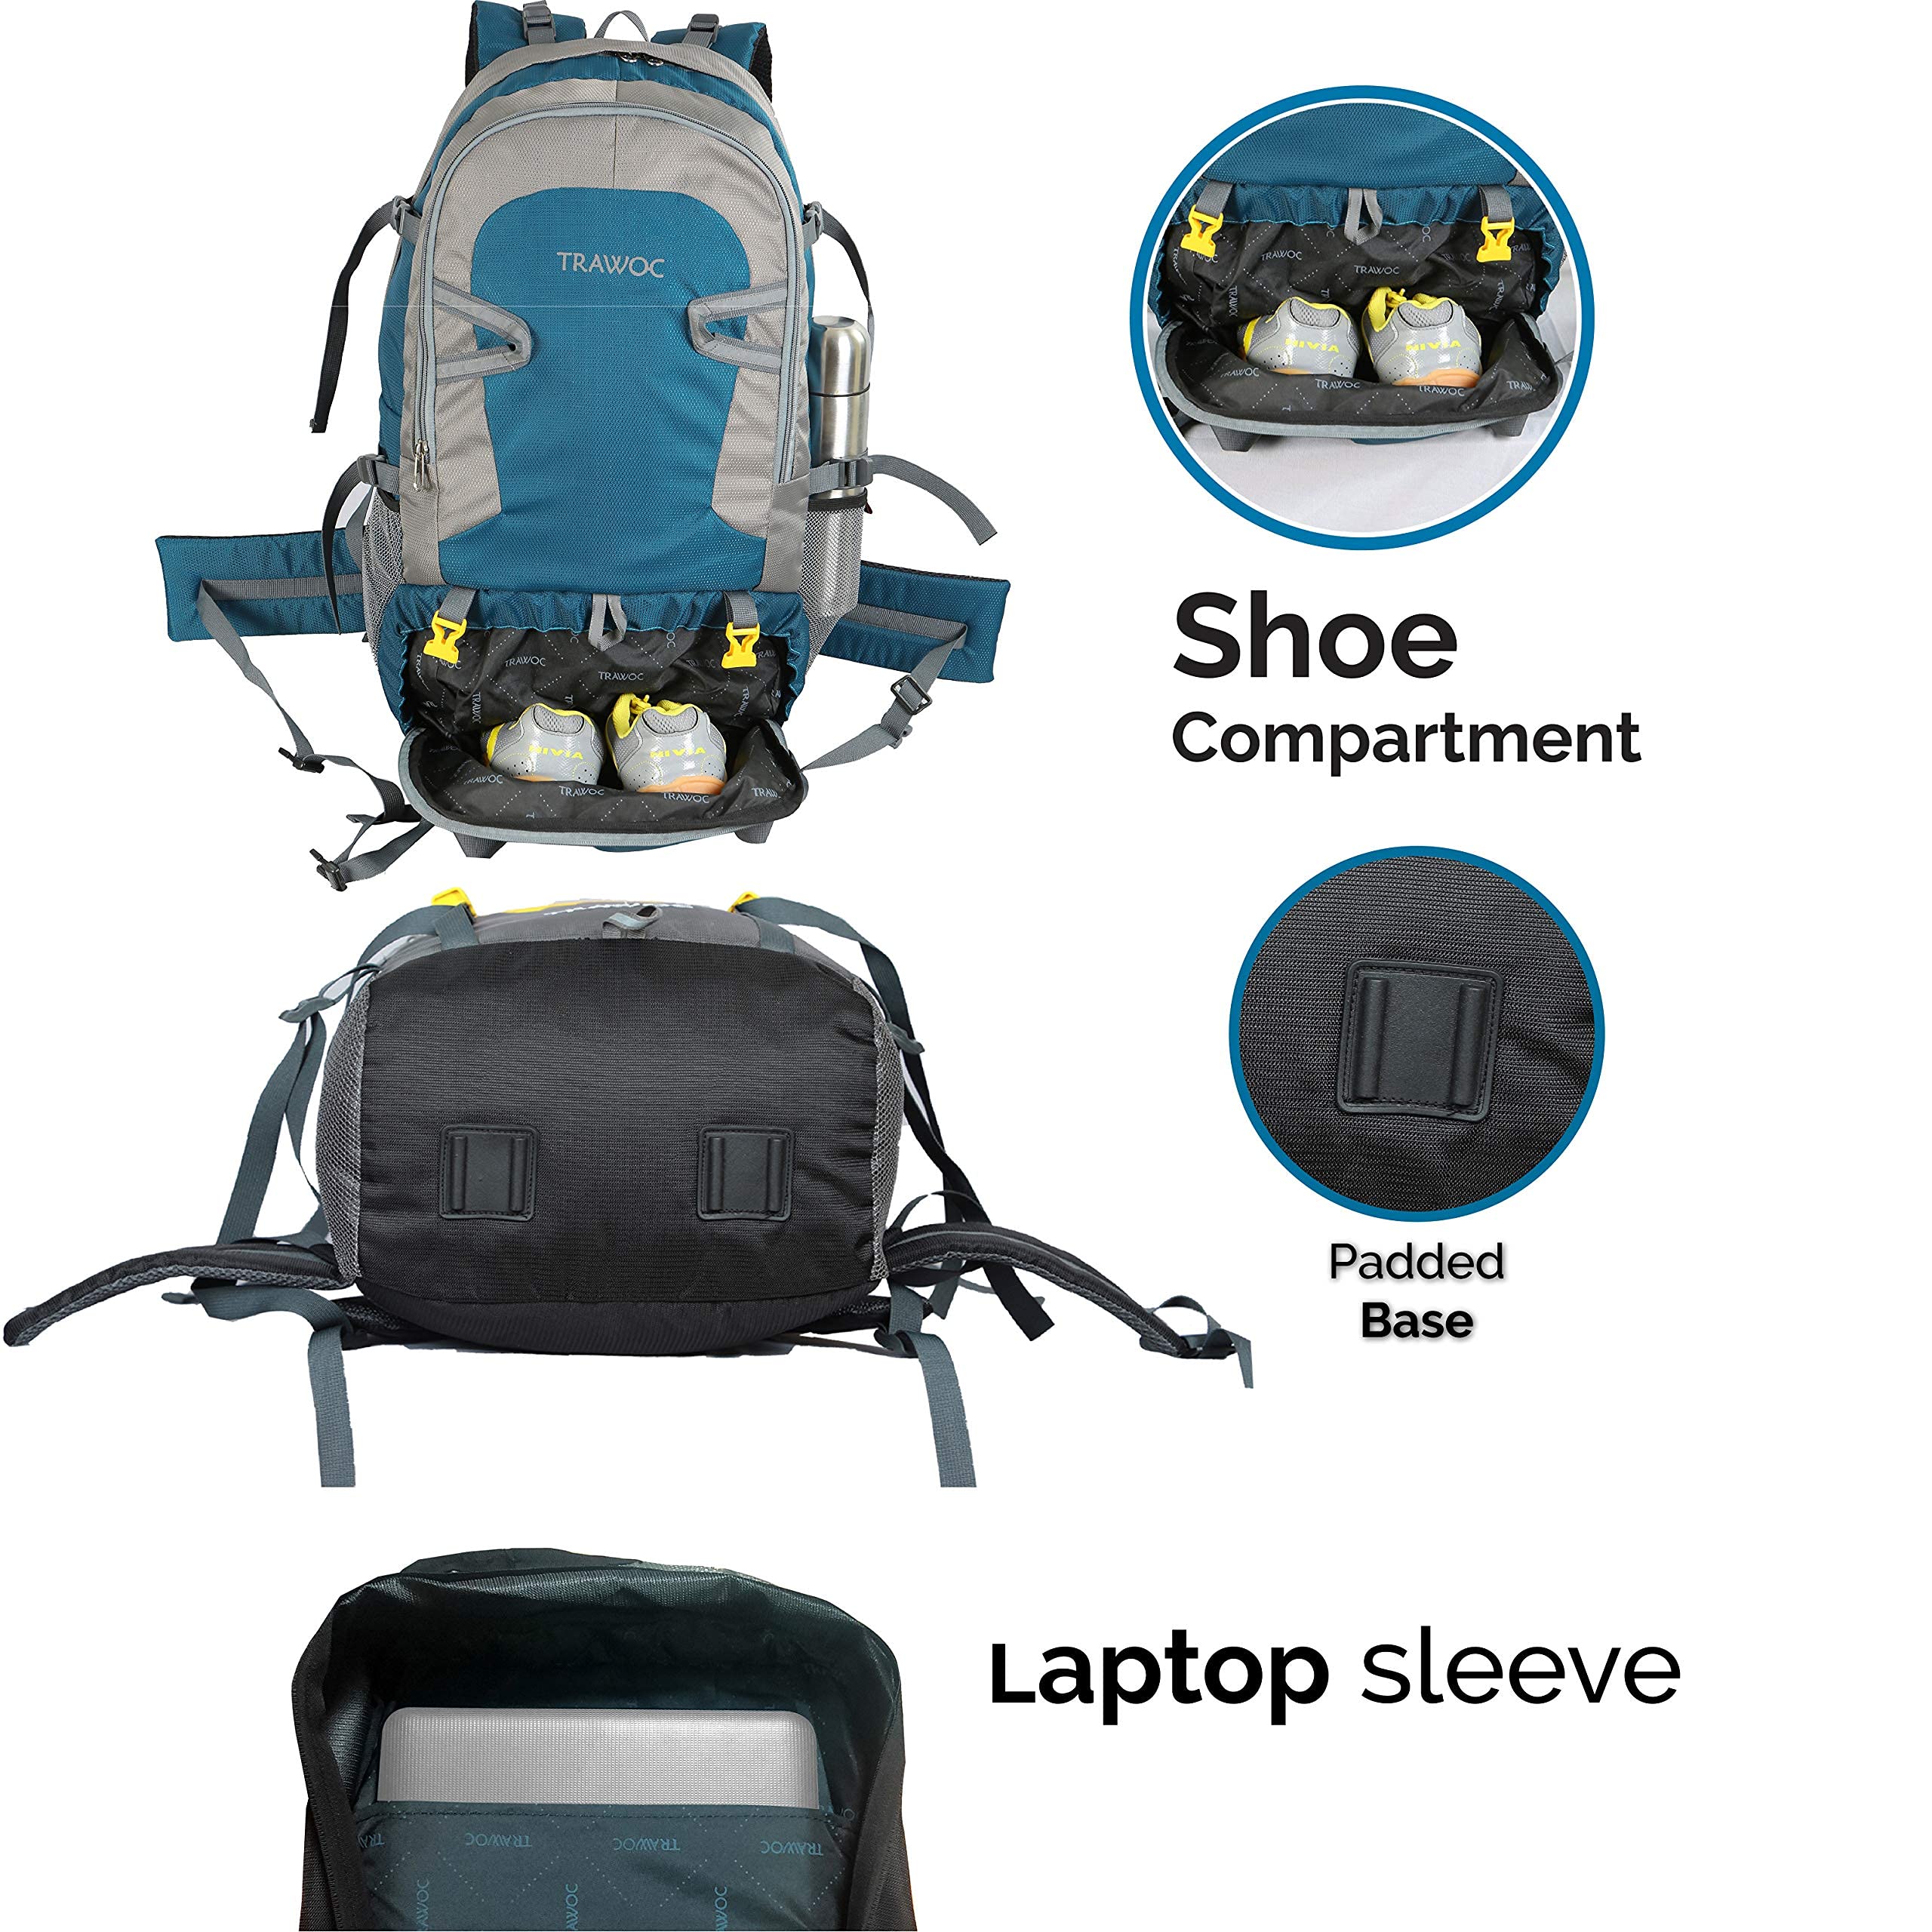 BLAZE-55 Backpack - Englishblue (Renewed)